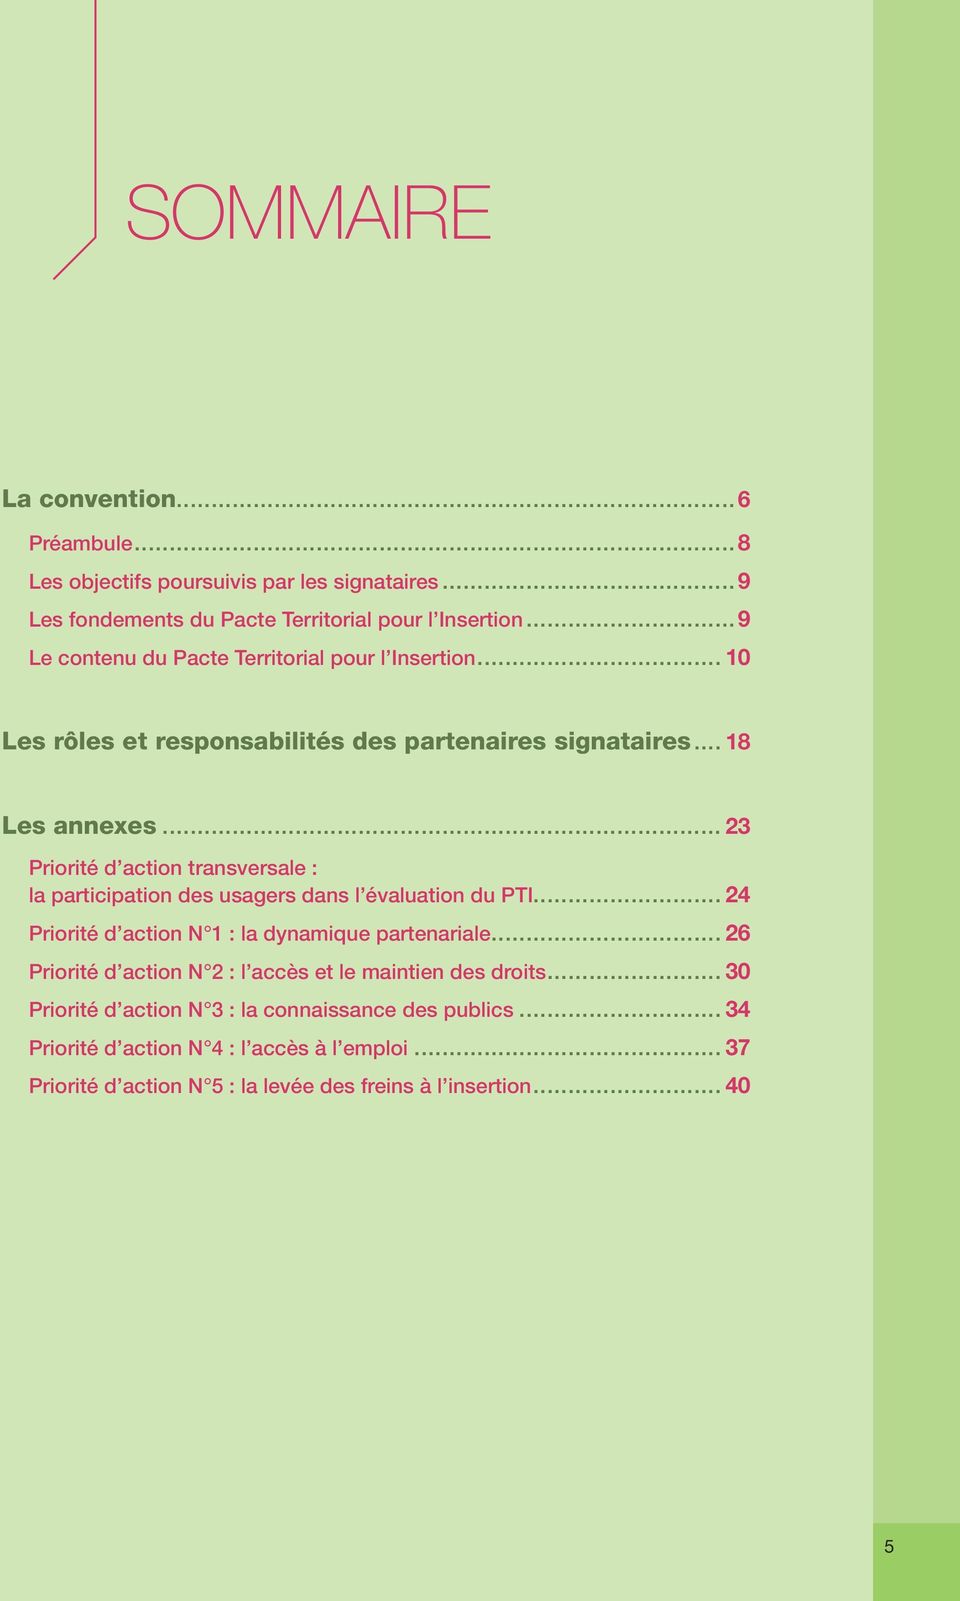 .. 23 Priorité d action transversale : la participation des usagers dans l évaluation du PTI... 24 Priorité d action n 1 : la dynamique partenariale.